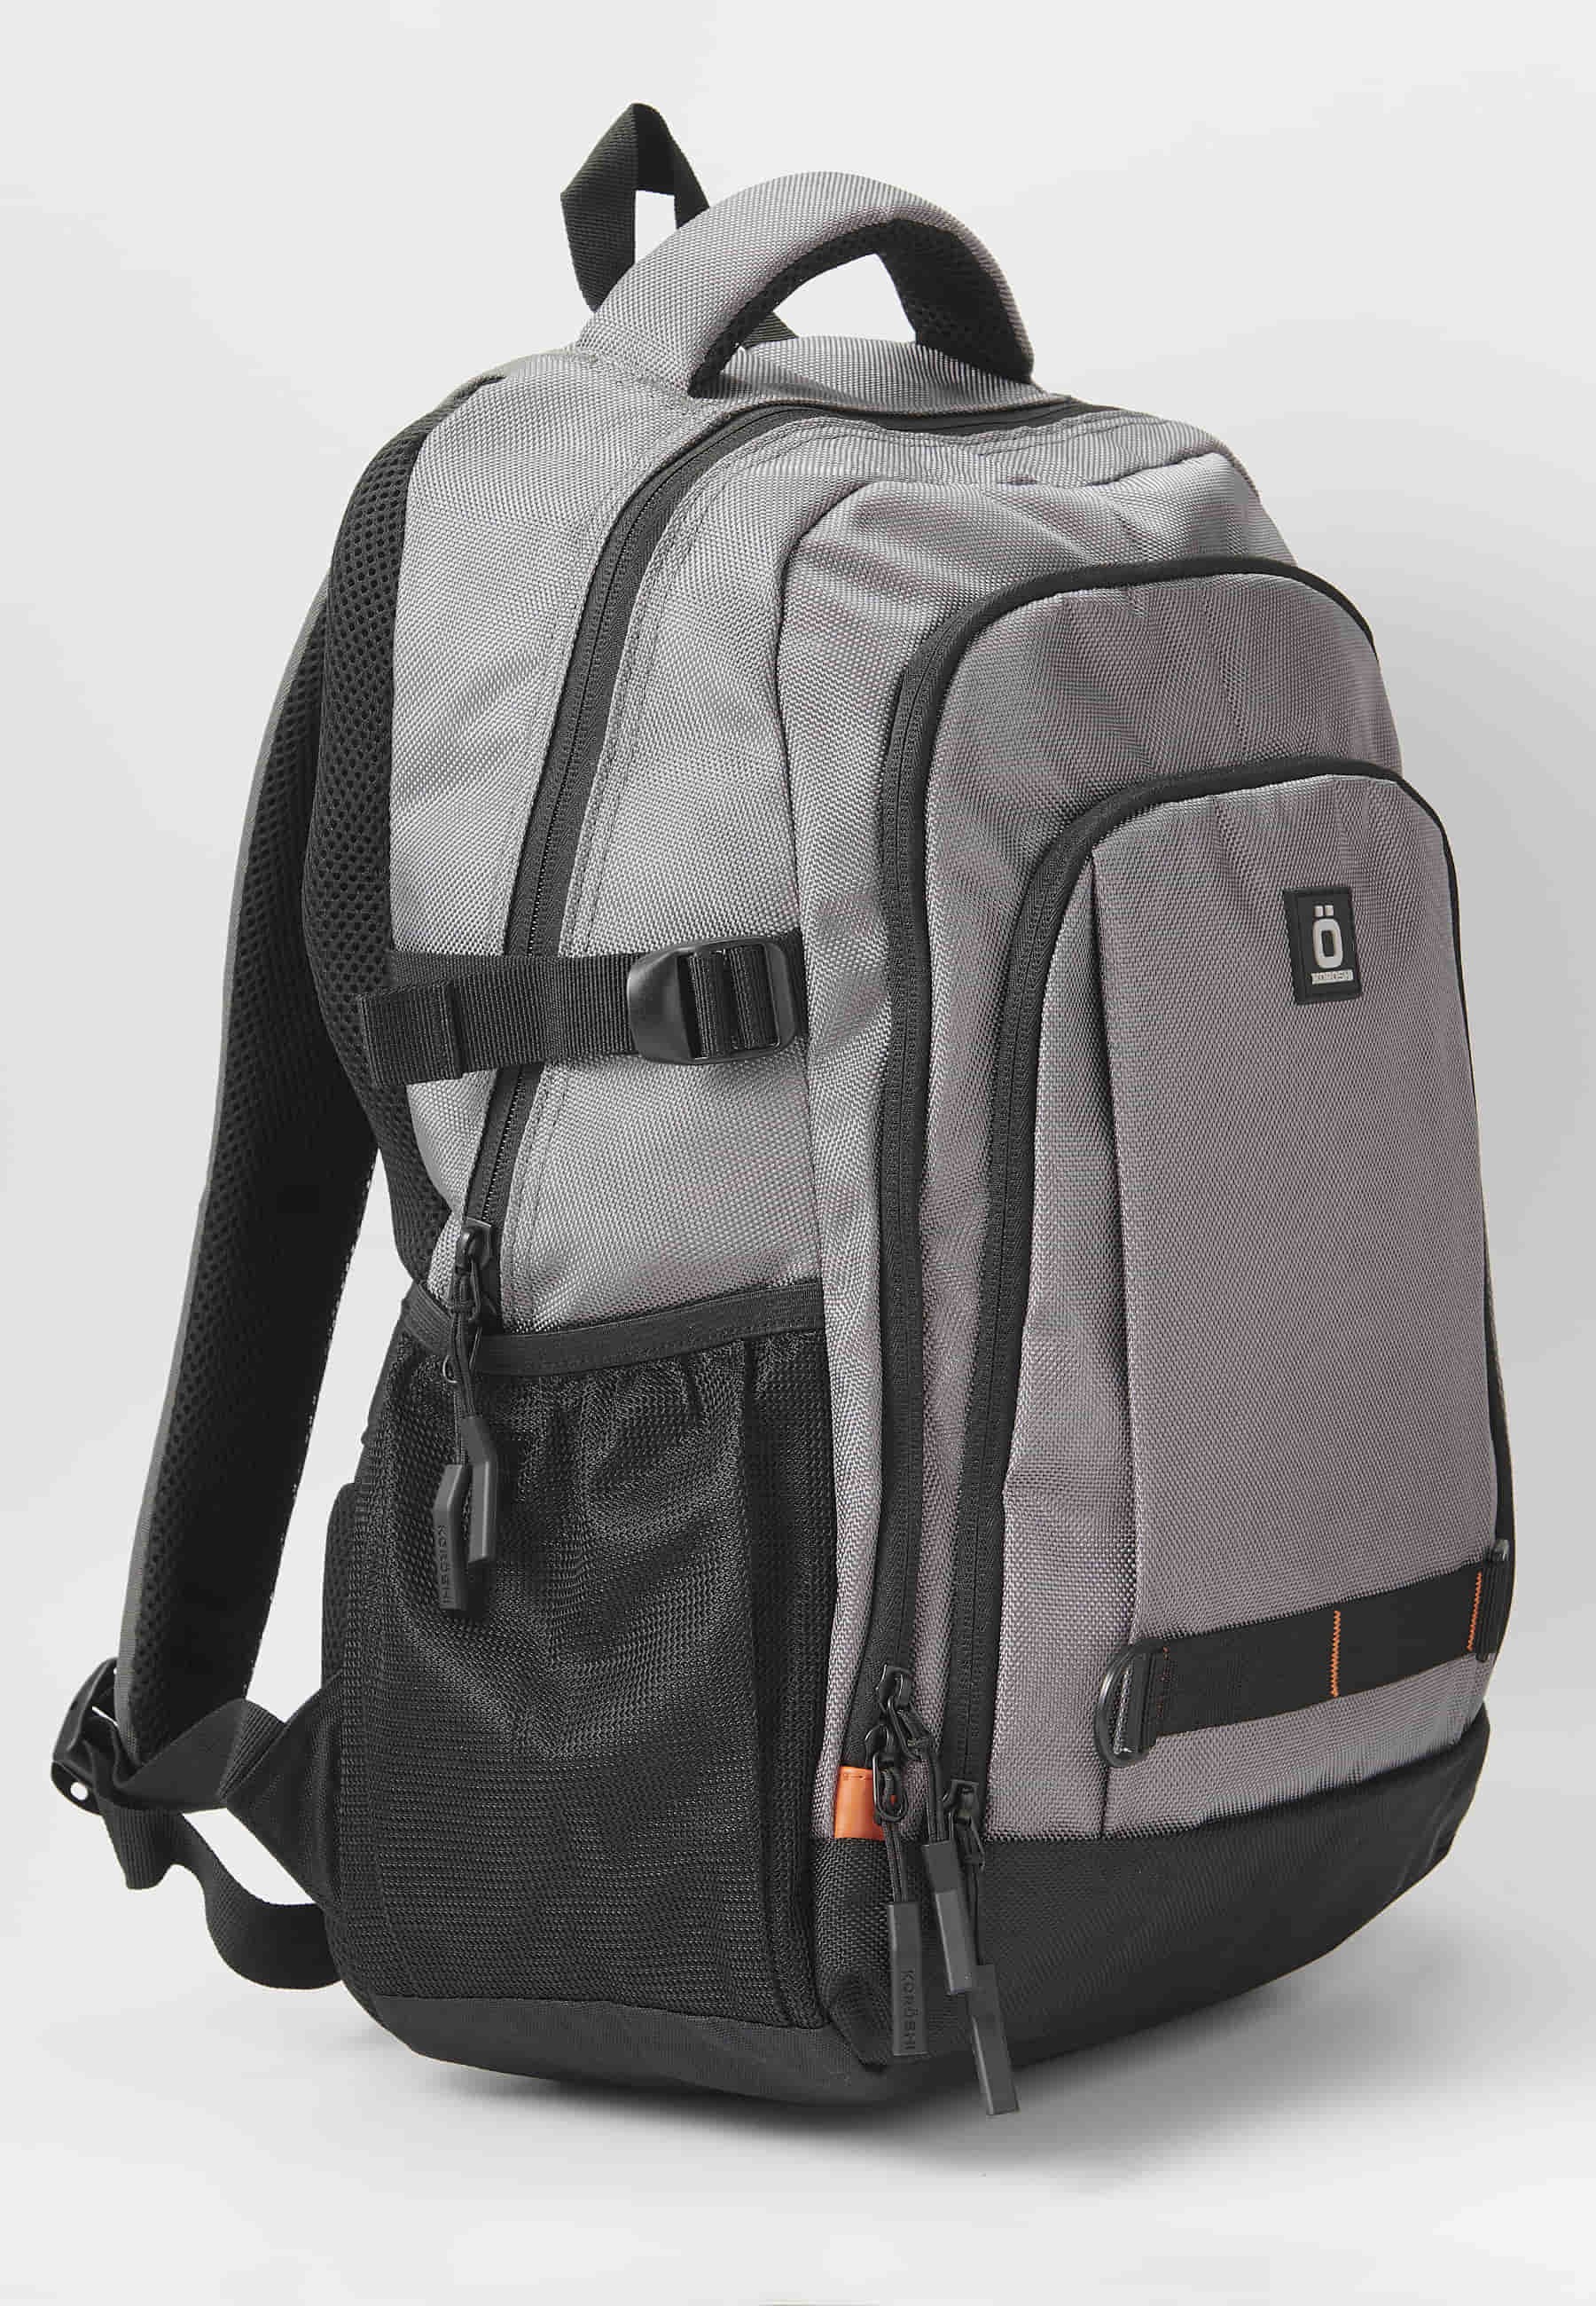 Koröshi-Rucksack mit drei Reißverschlussfächern, eines für Laptop, mit grauen Innentaschen 5